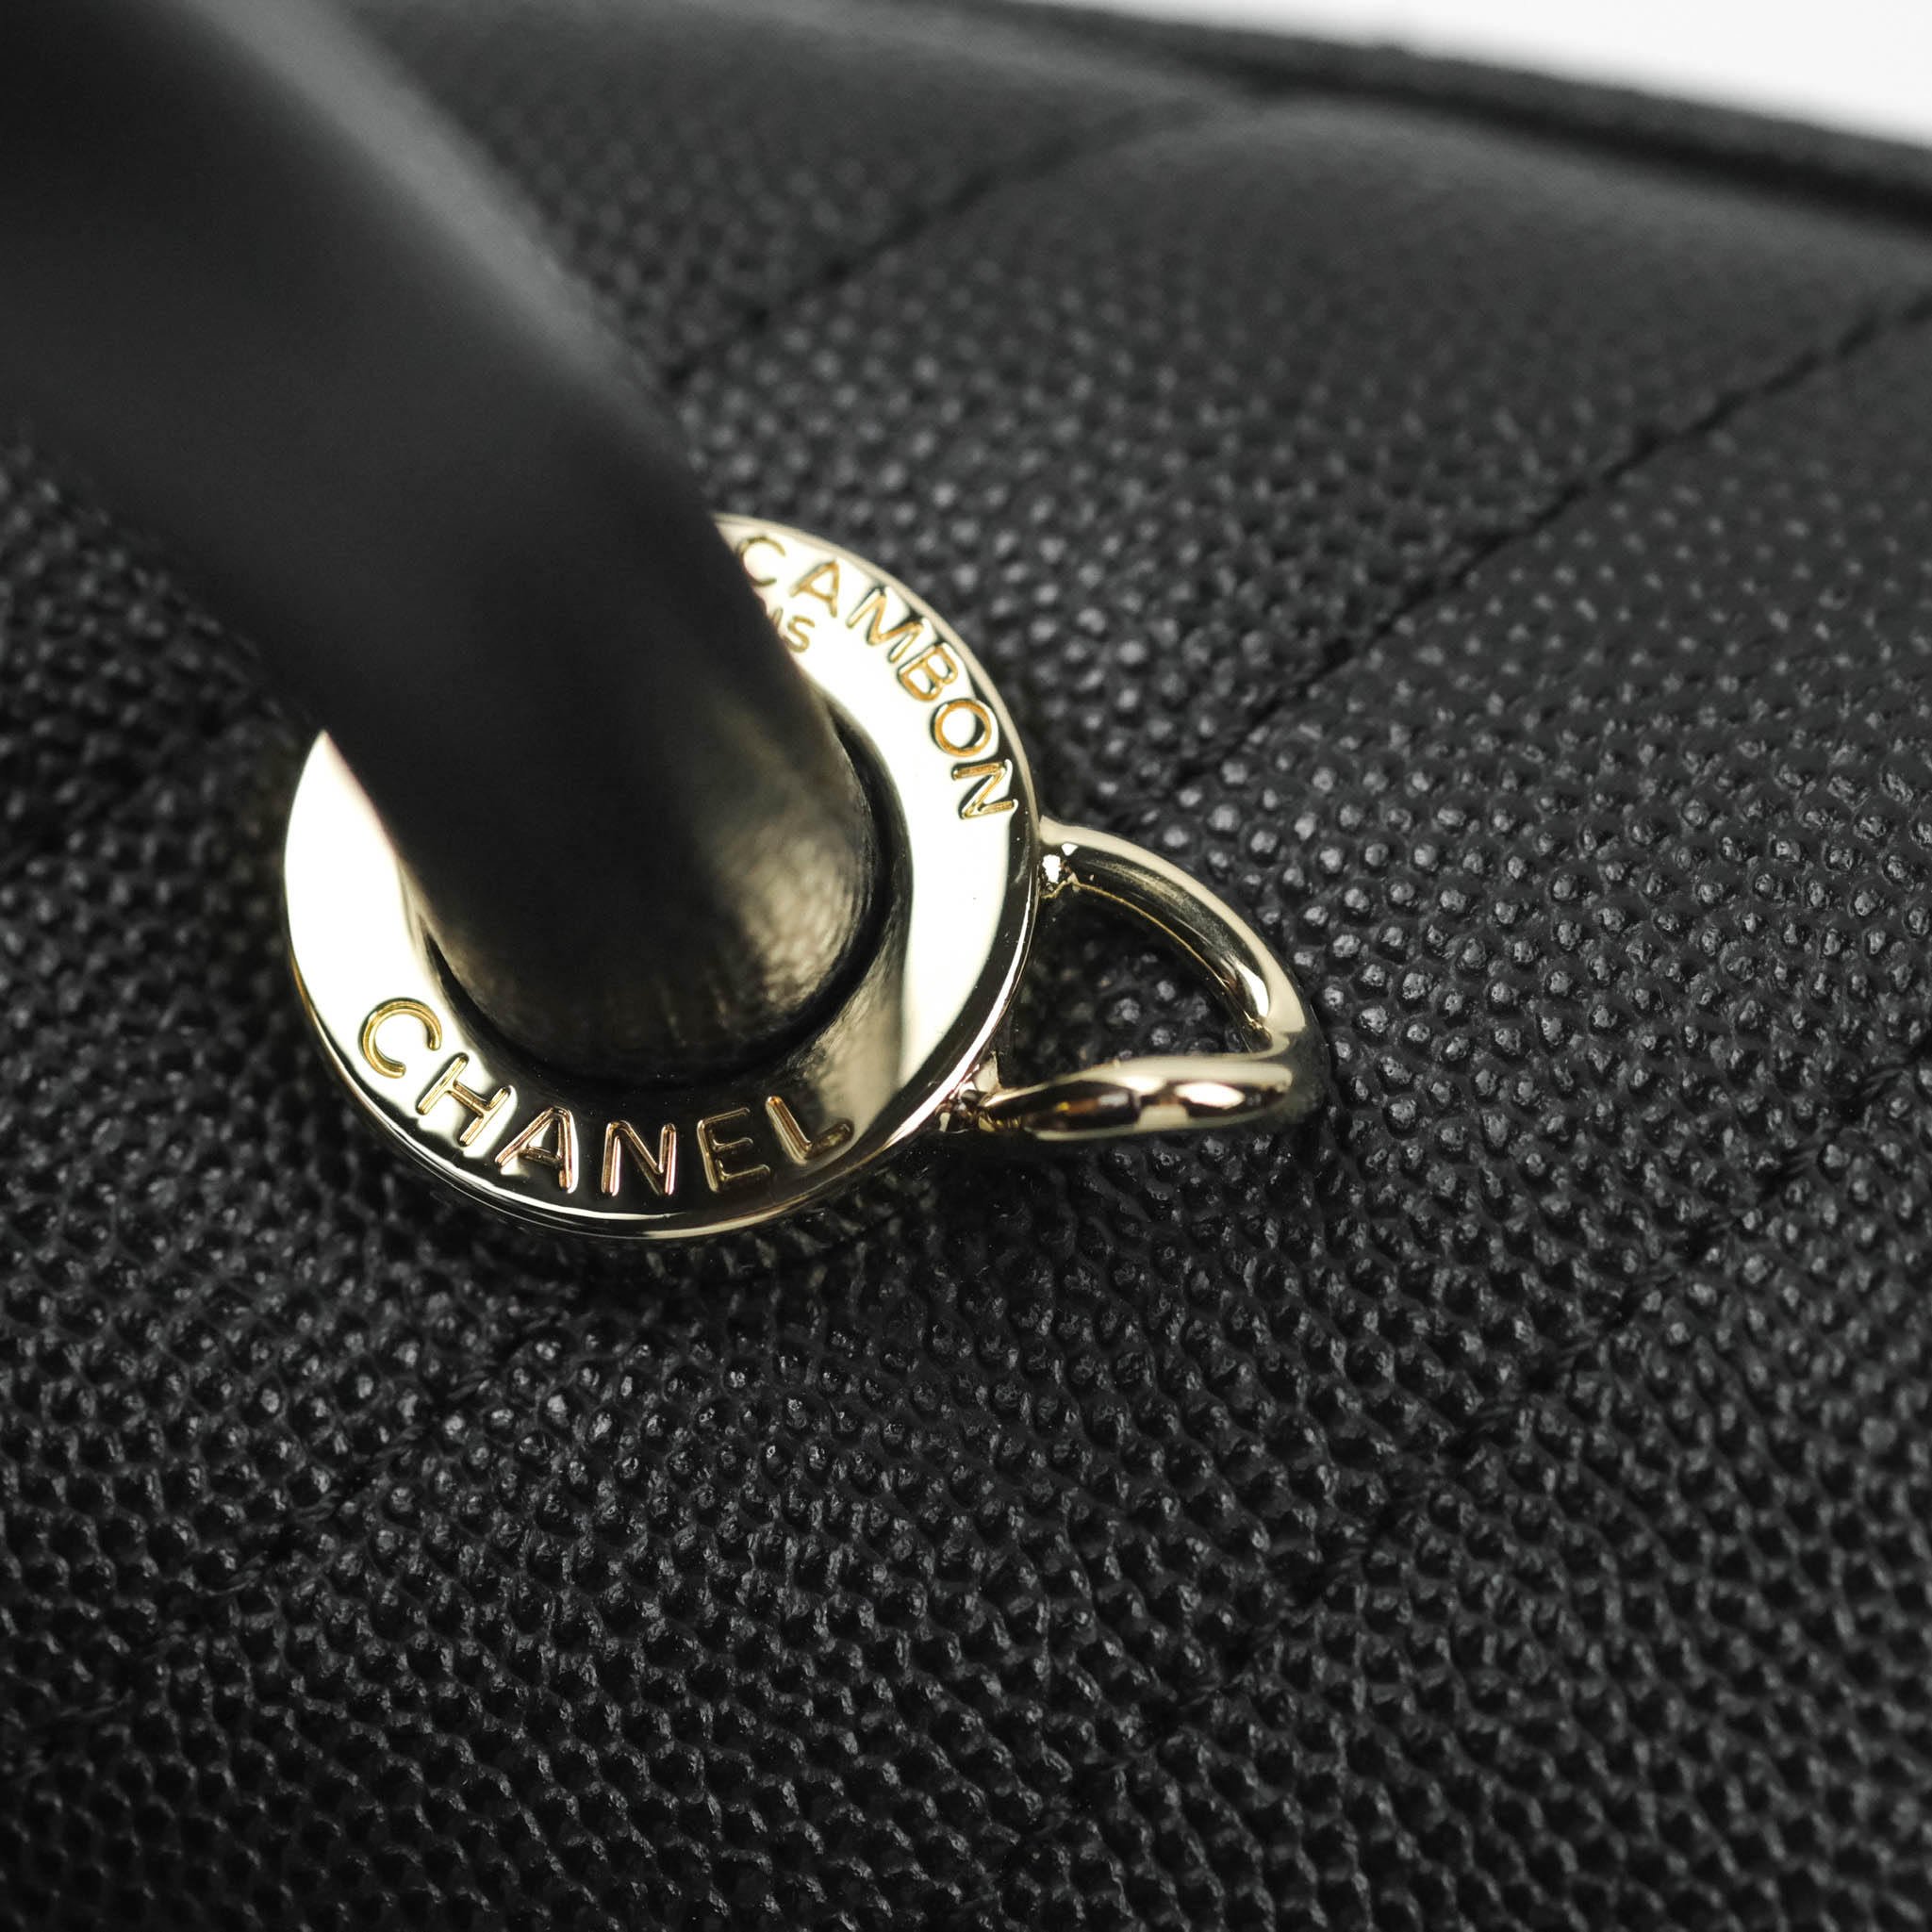 Chanel Mini Coco Handle Chevron Stone White Caviar Aged Gold Hardware – Coco  Approved Studio